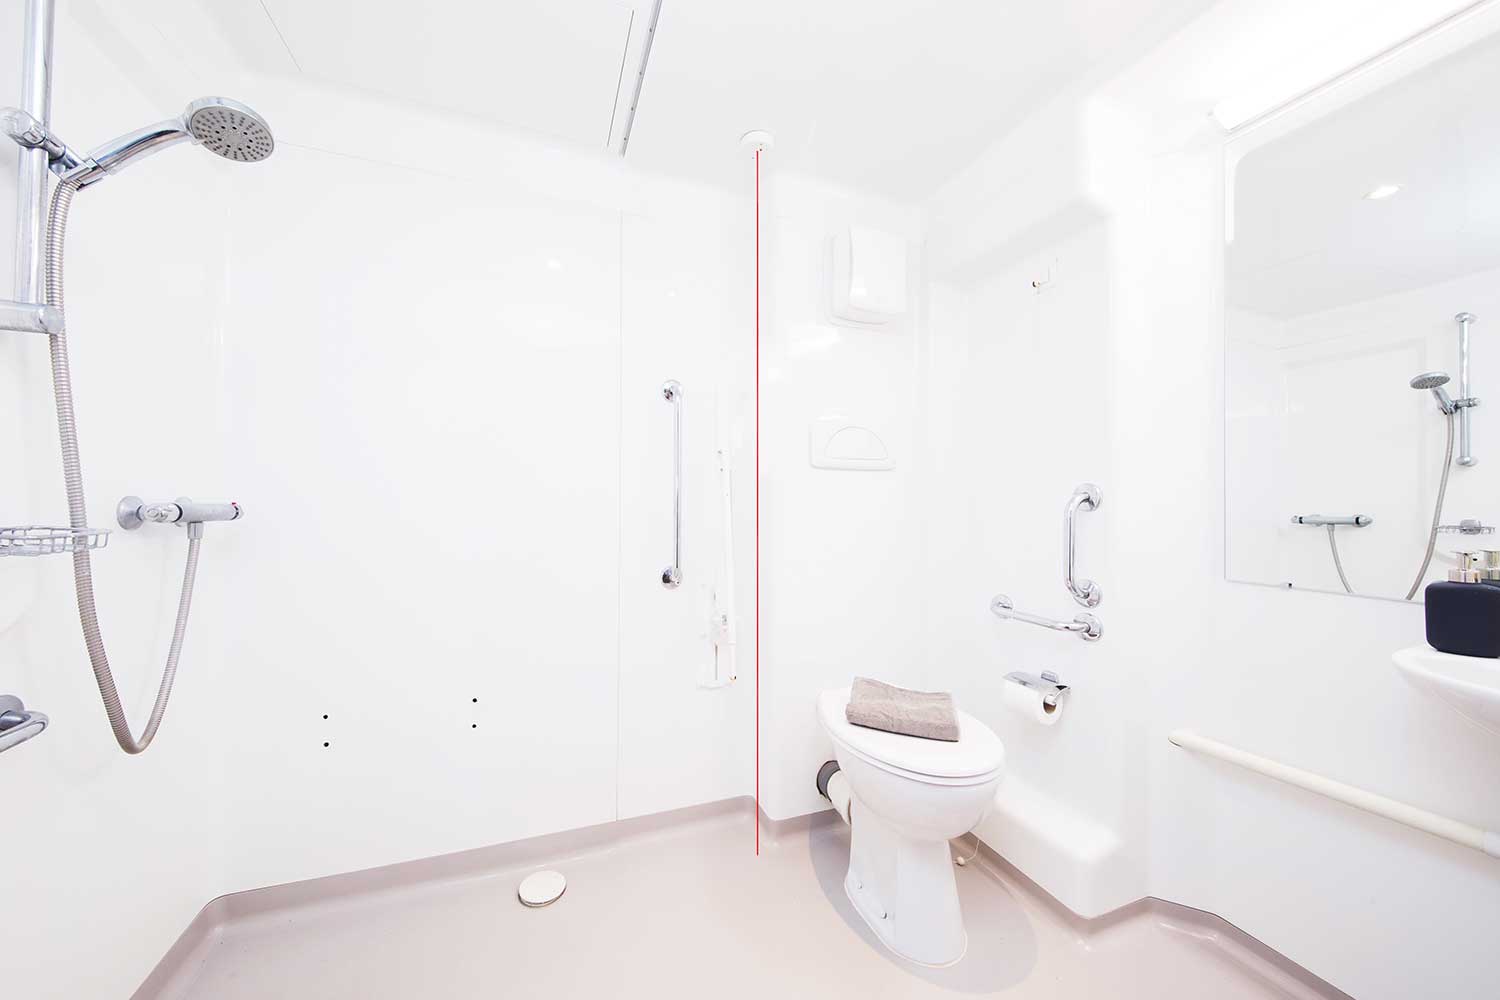 Accessible studio bathroom